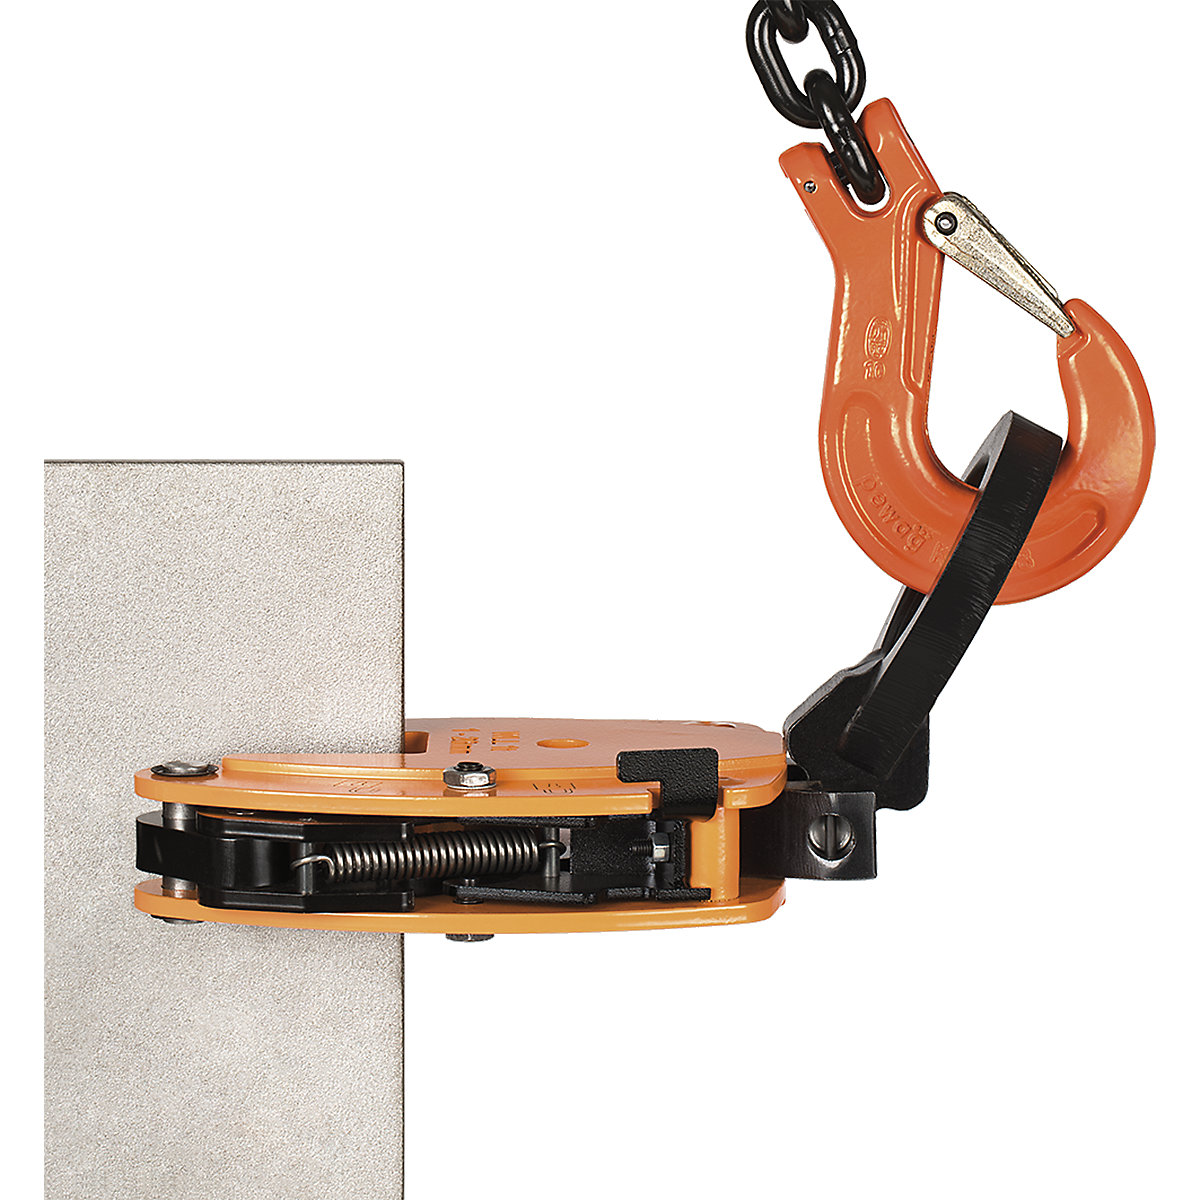 Stezaljka za nošenje, model KL, okomita uporaba – Pfeifer (Prikaz proizvoda 2)